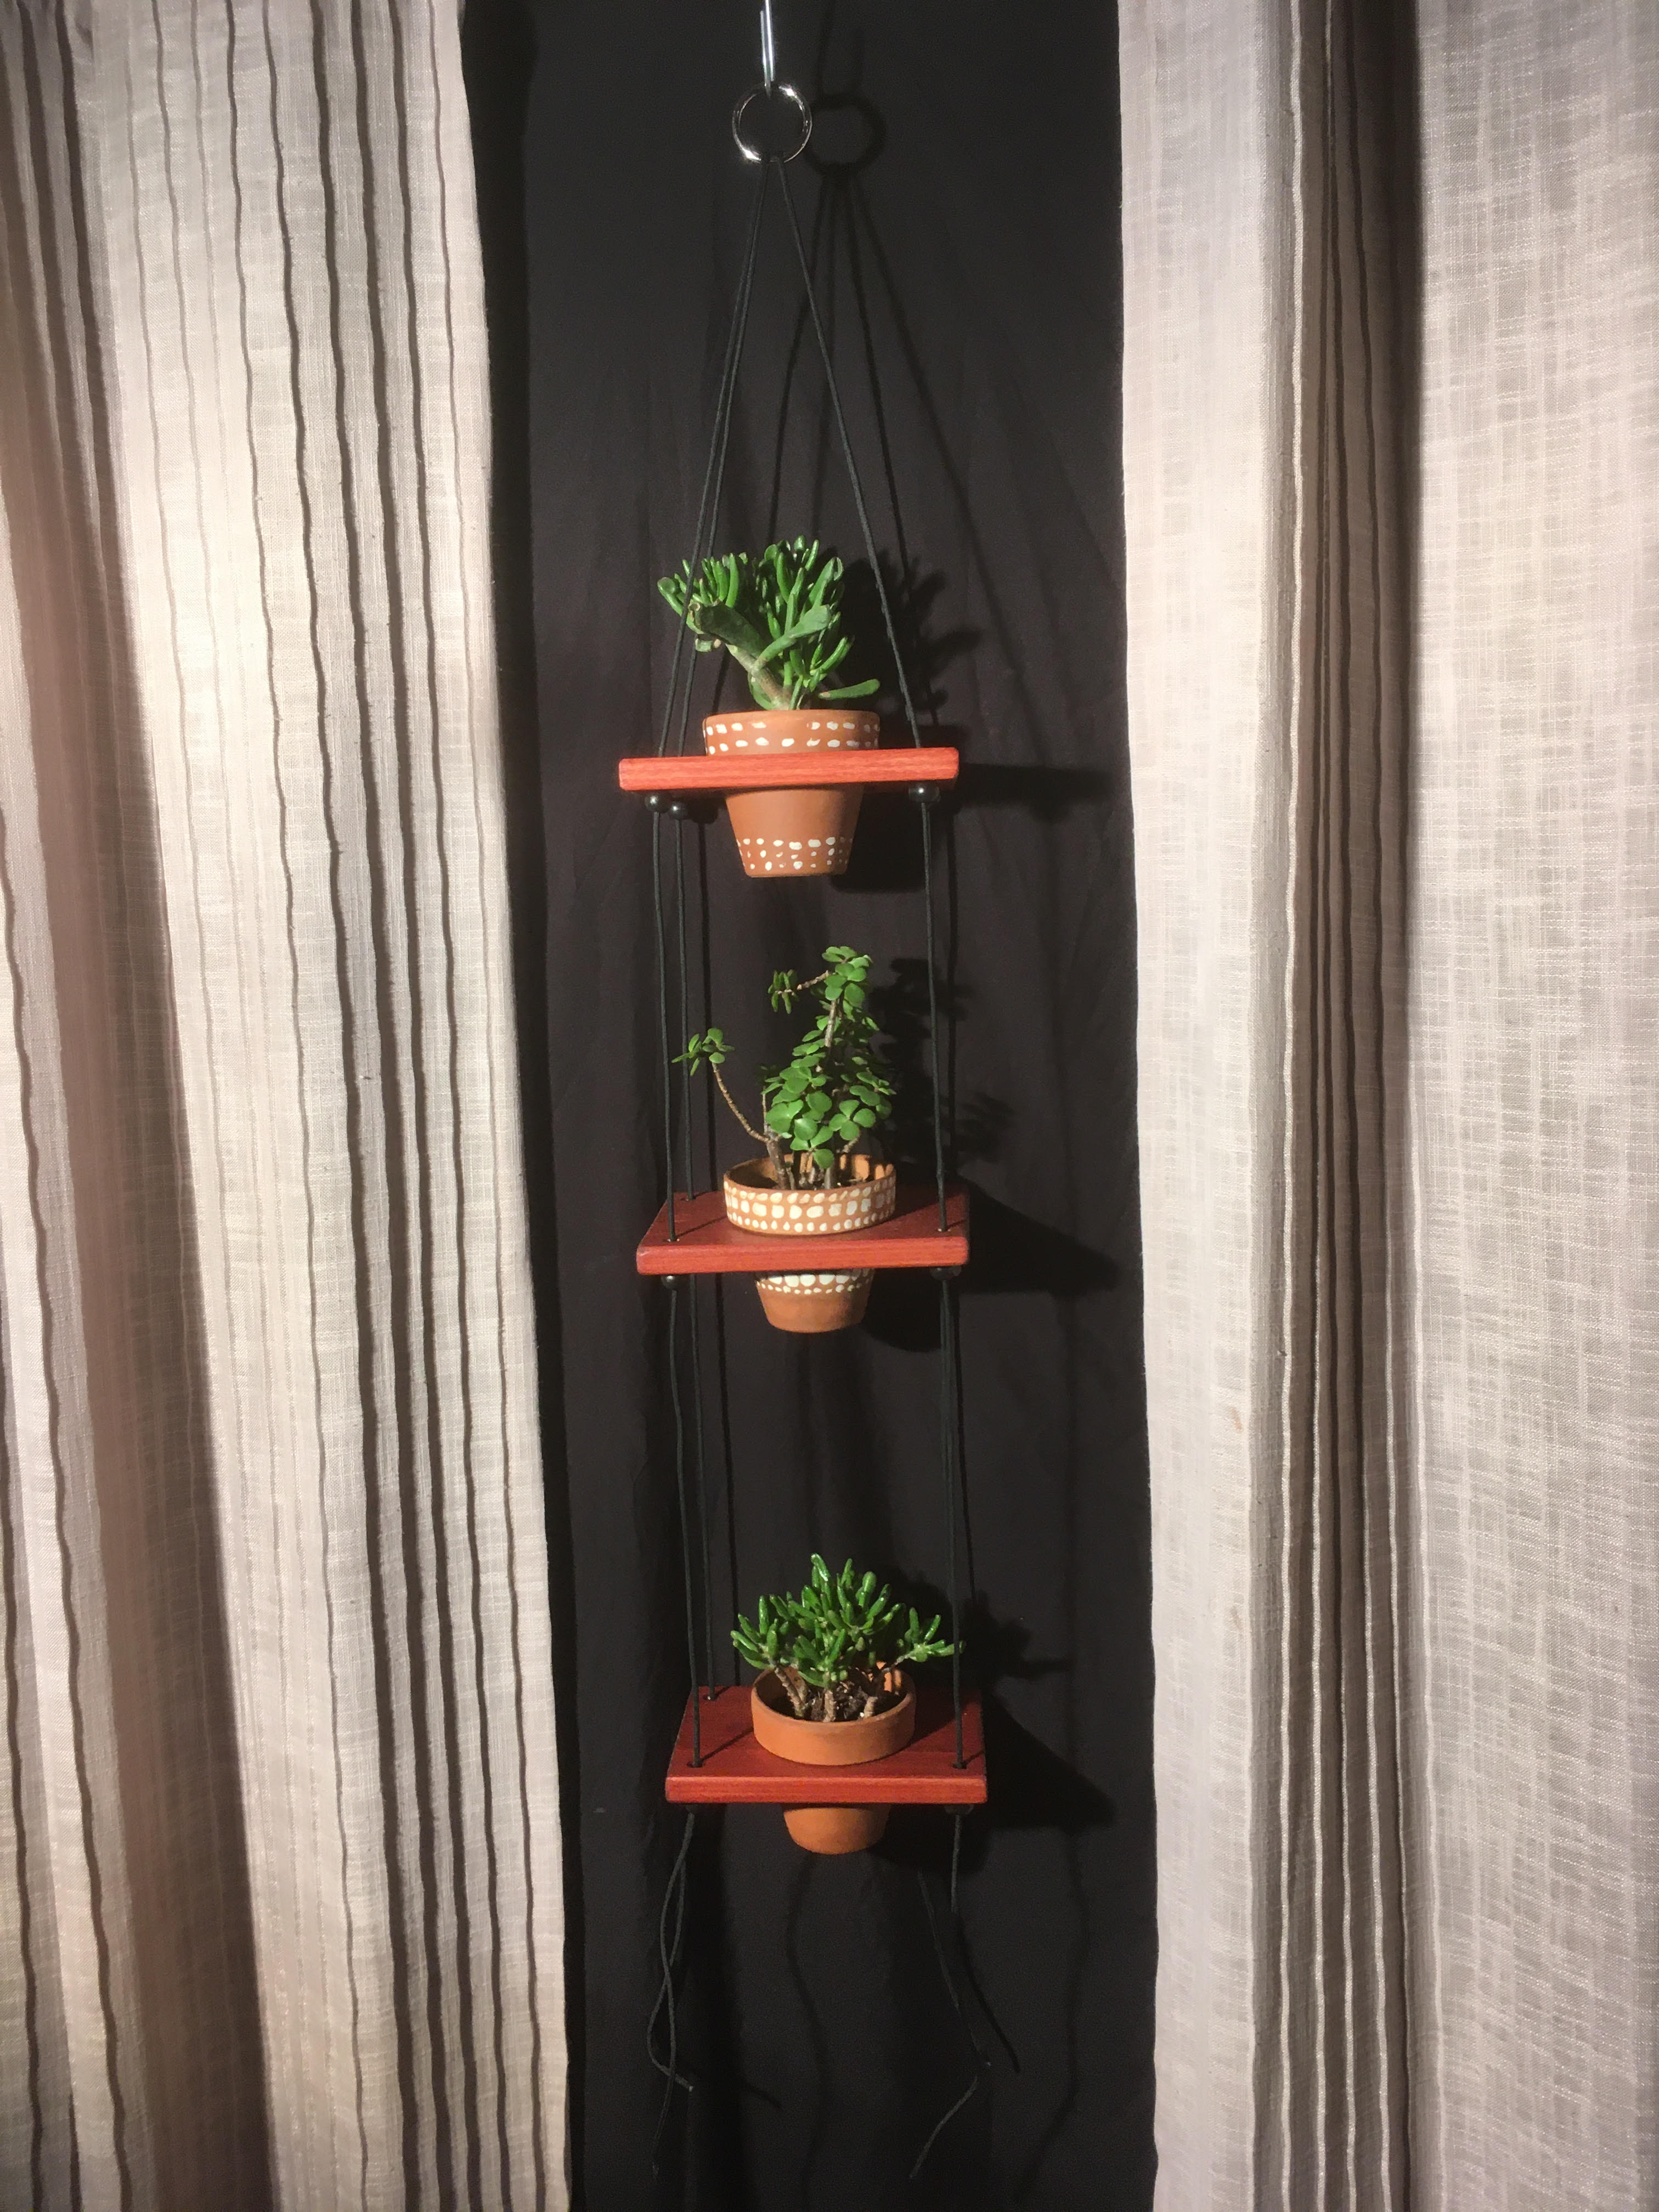 3 Pot Plant Shelf "Shwing"